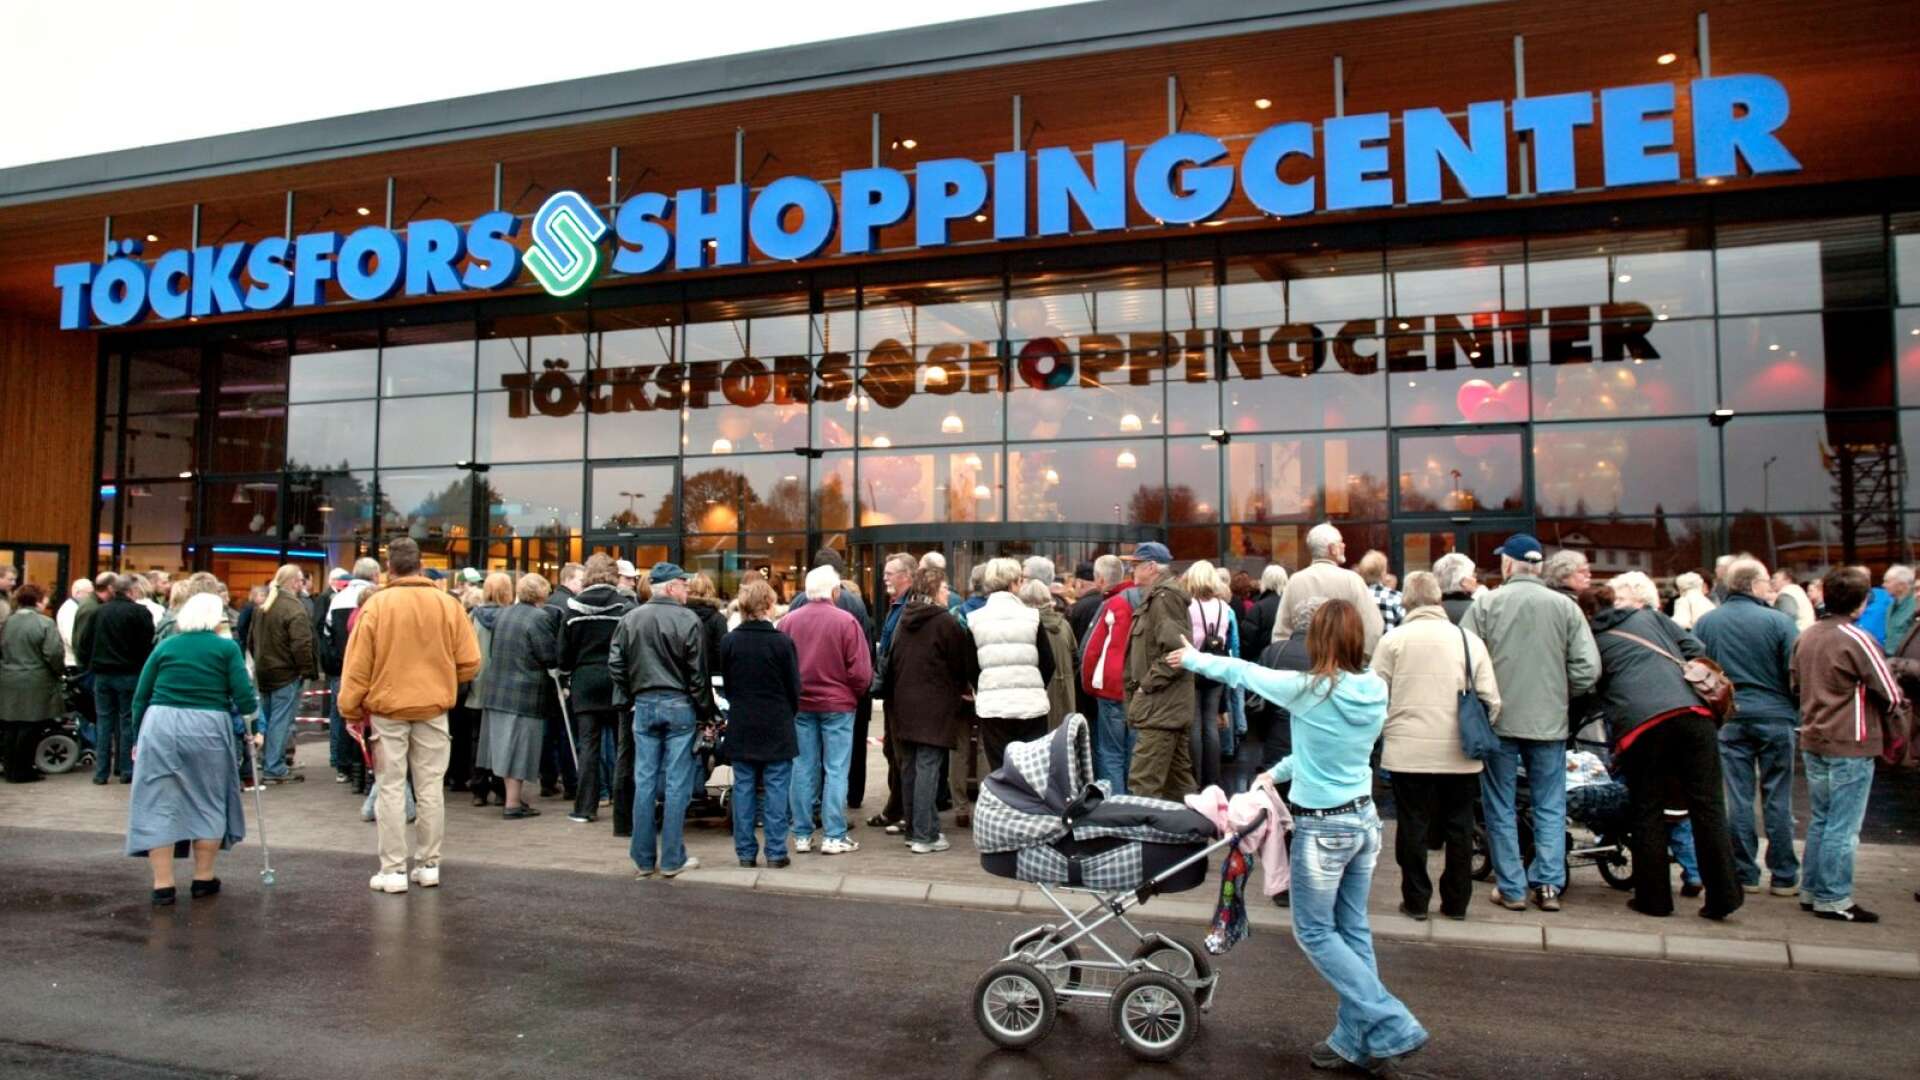 Besökarna fortsätter komma till Töcksfors shoppingcenter, som i våras fick flera nya butiker som drar.